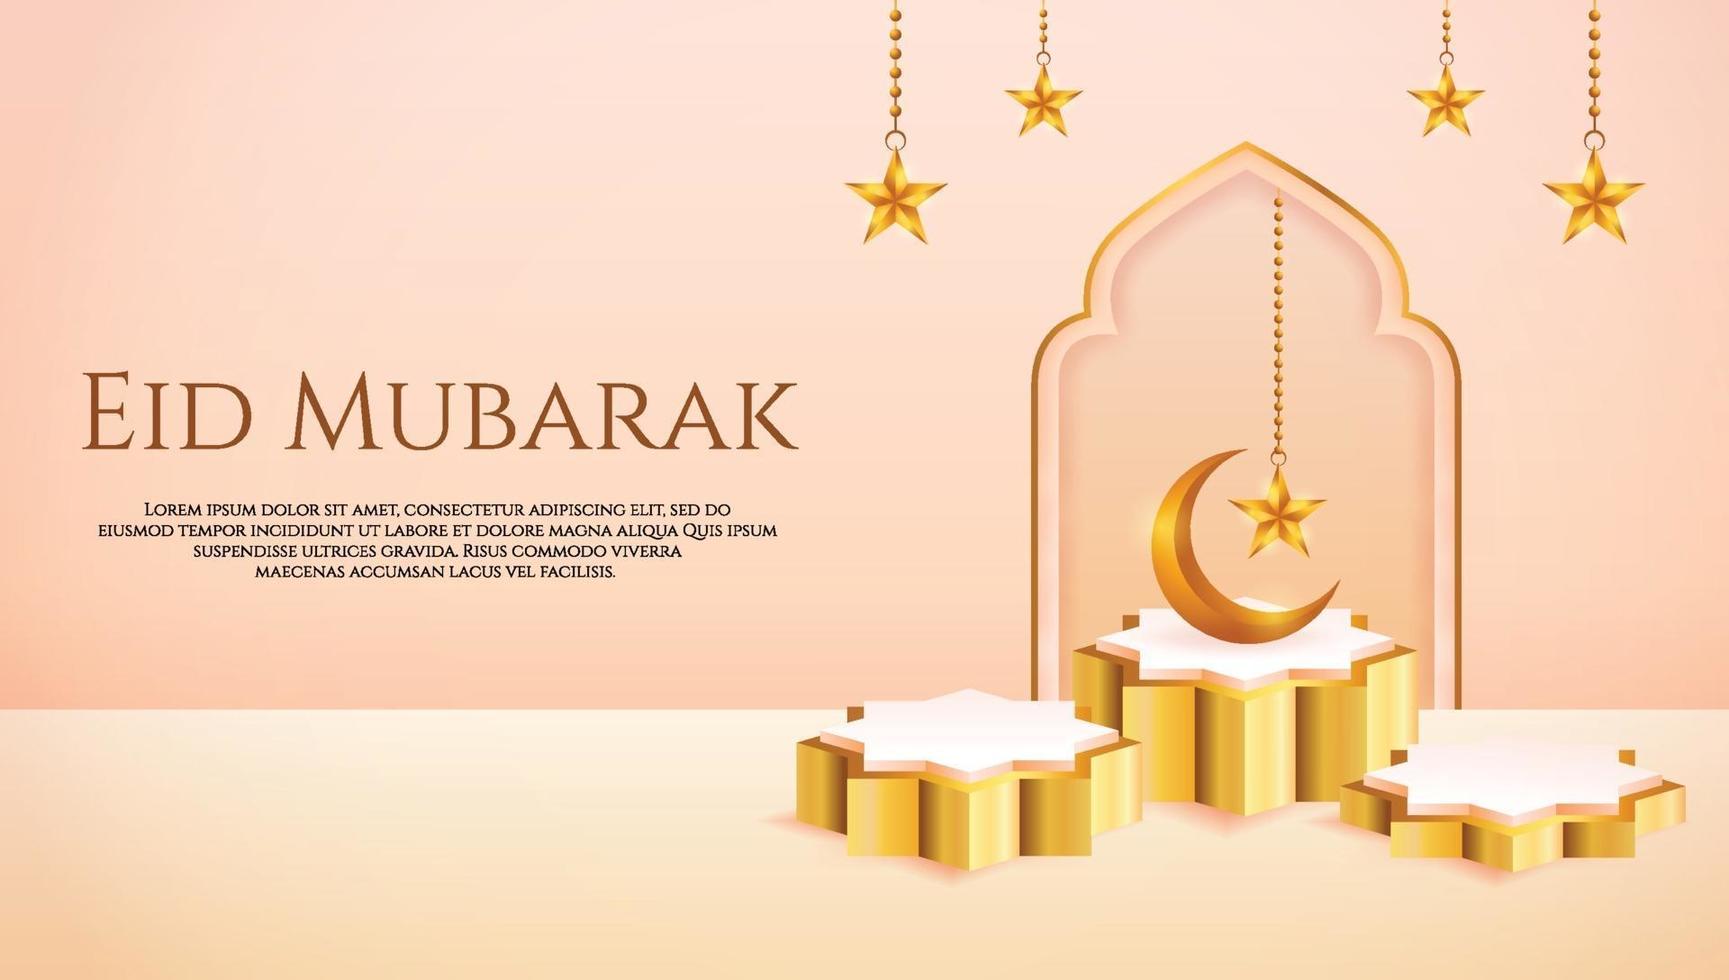 Esposizione del prodotto 3d color pesca e podio d'oro islamico a tema con falce di luna e stella per il ramadan vettore